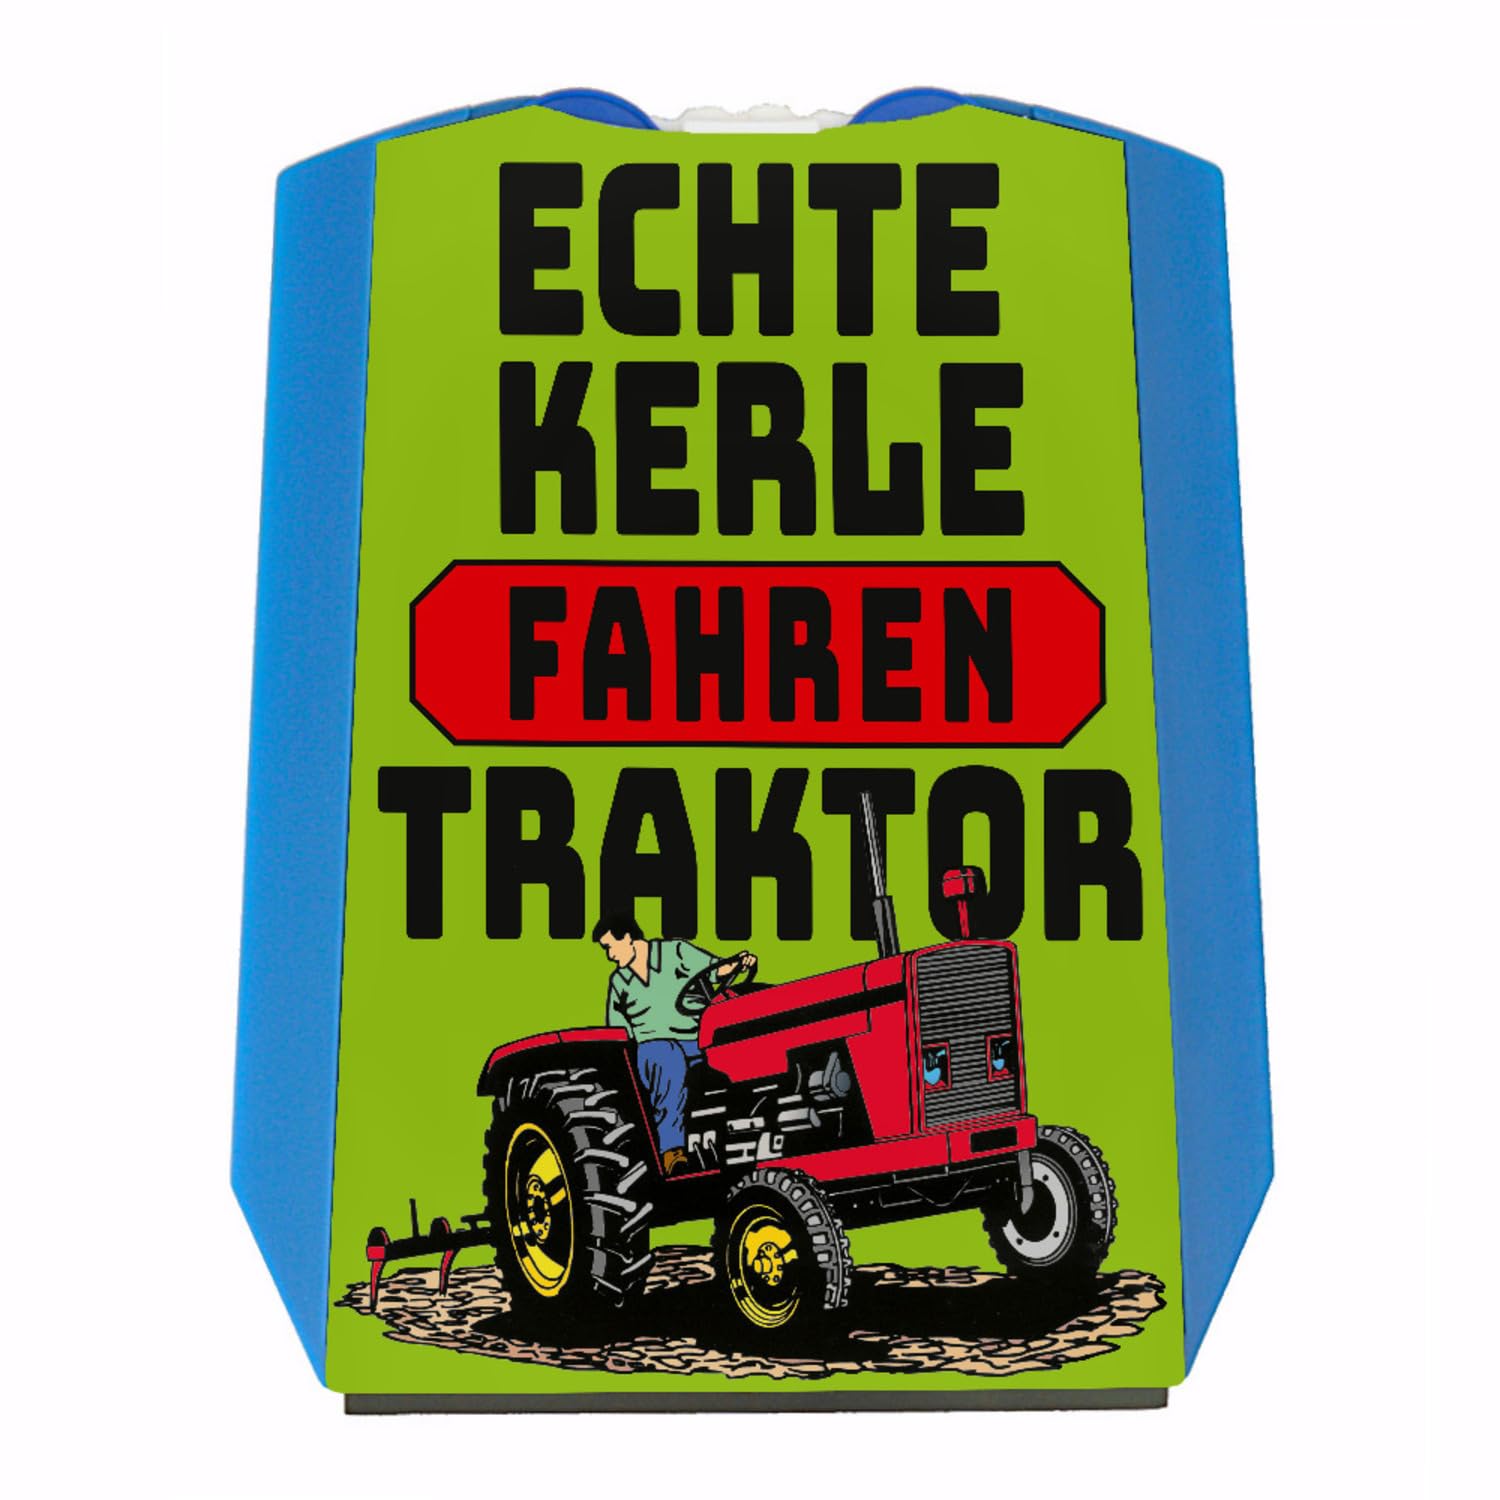 Echte Kerle Fahren Traktor Parkscheibe in grün als Geschenk für leidenschaftliche Bauern die Allen in der Stadt Zeigen wollen wie geil Ihr Job auf dem Land ist von speecheese